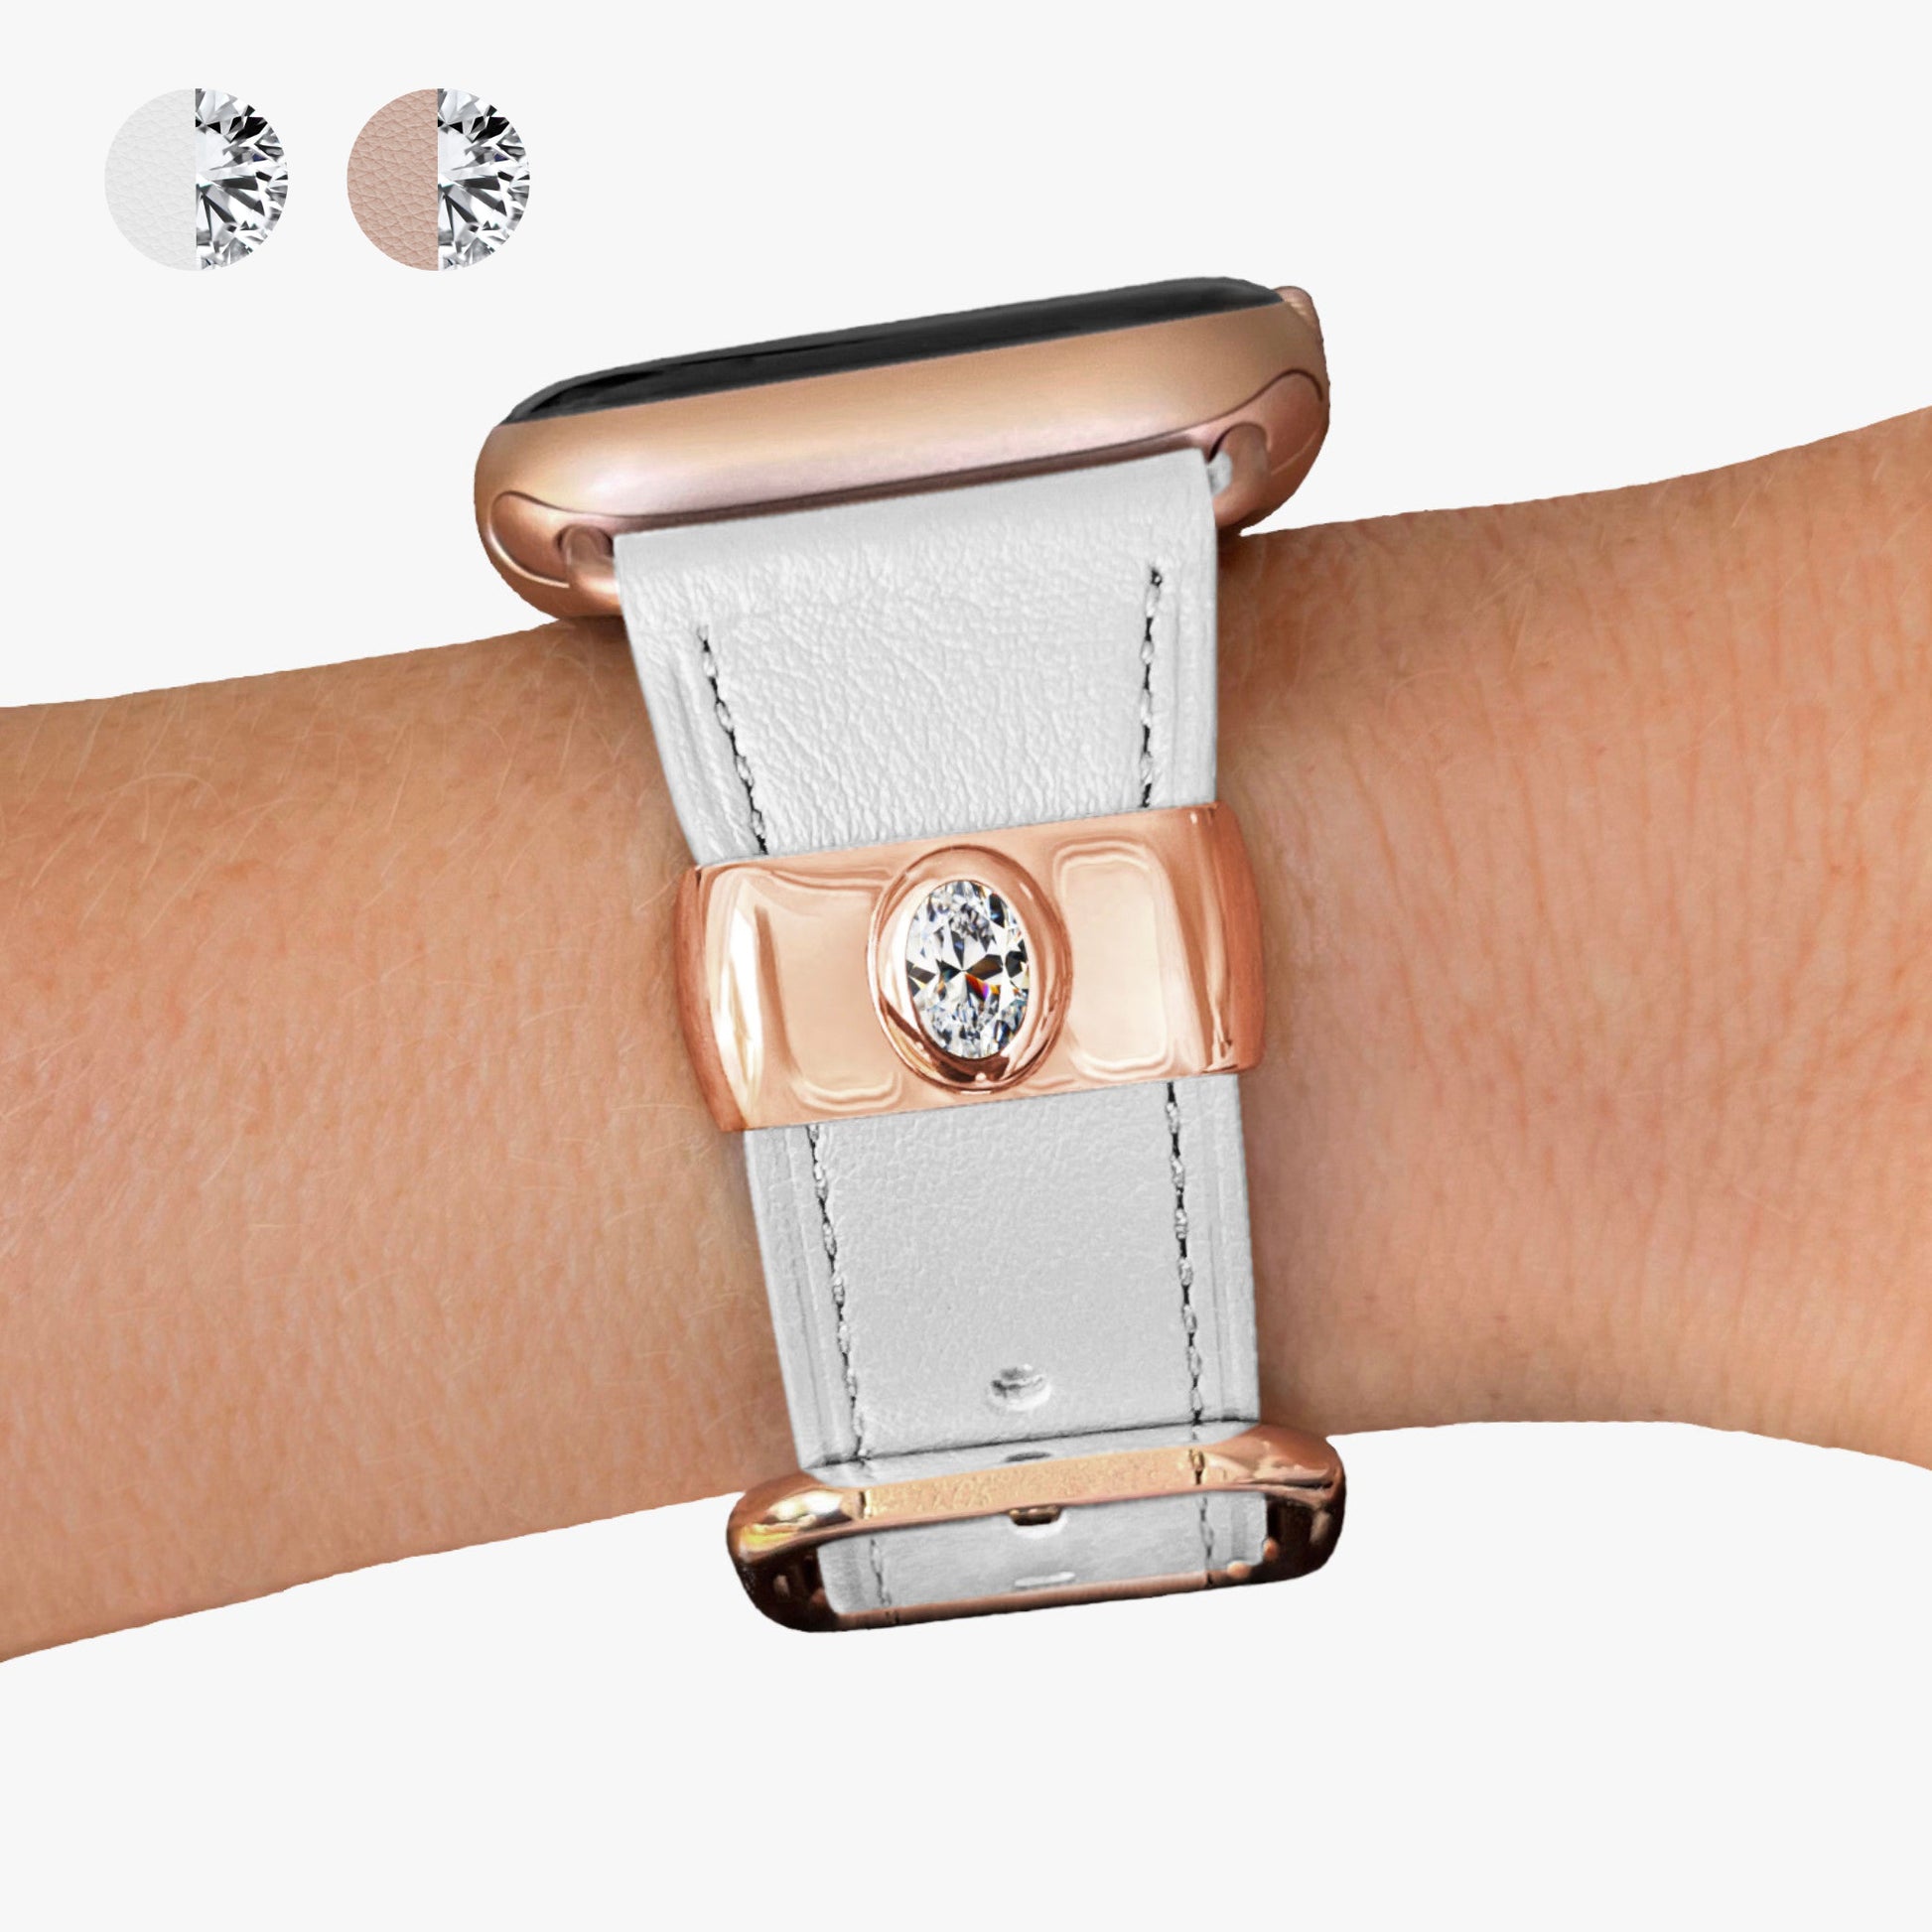 Pamoro® Apple Watch Schmuck Set - Lederband weiß + Charm in echt Silber Rosé vergoldet - ovaler weißer Cubic Zirkonia 